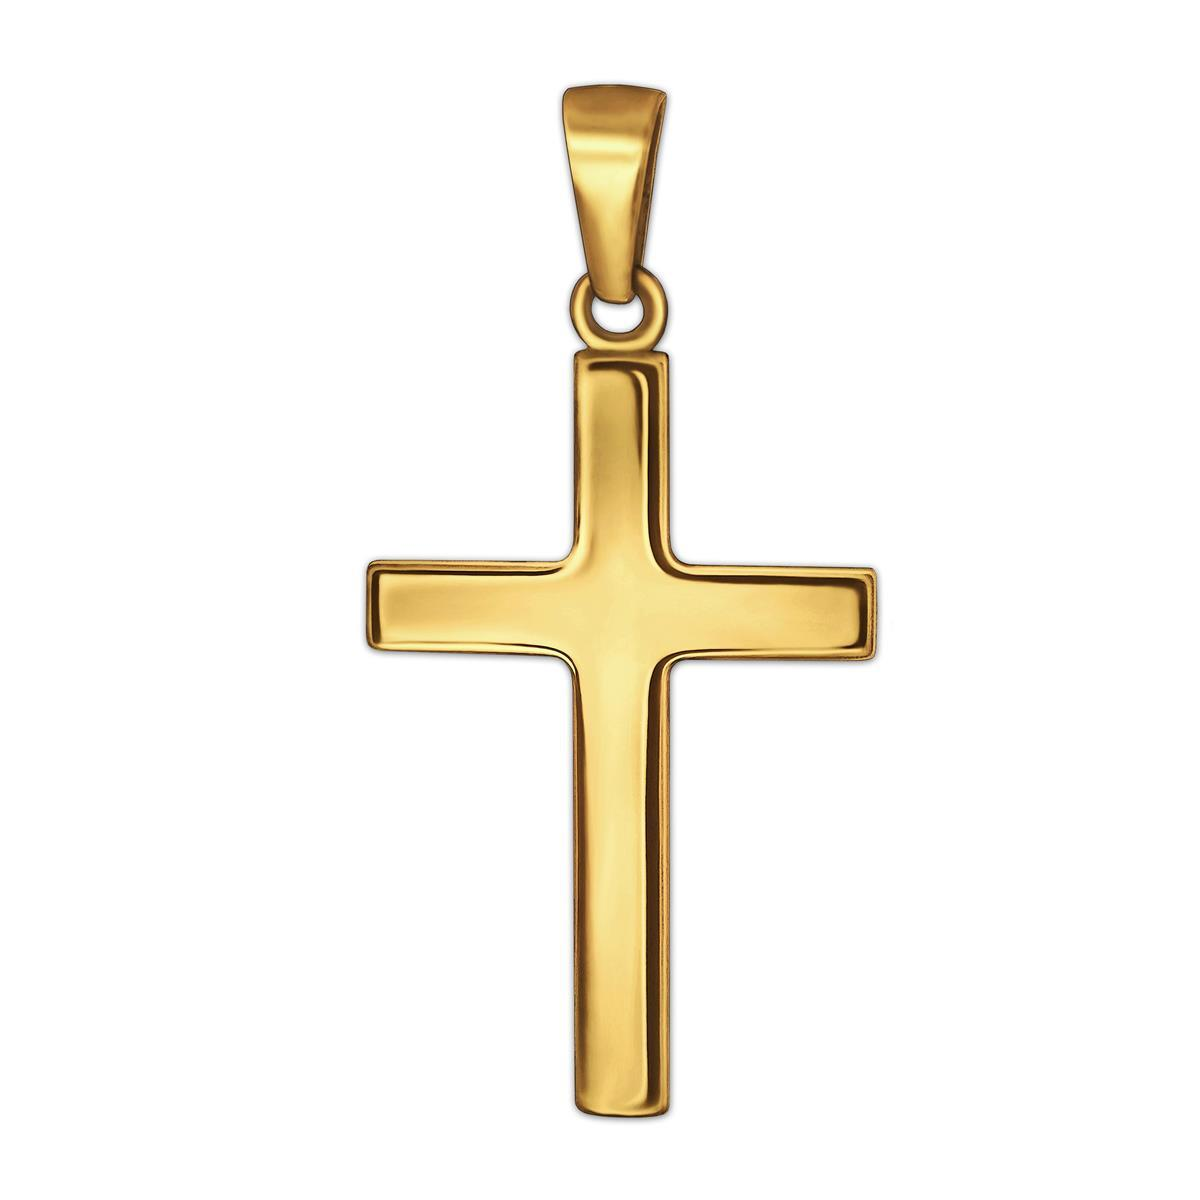 Goldener Anhänger Kreuz 21 mm schlicht glänzend 375 GOLD 9 KARAT